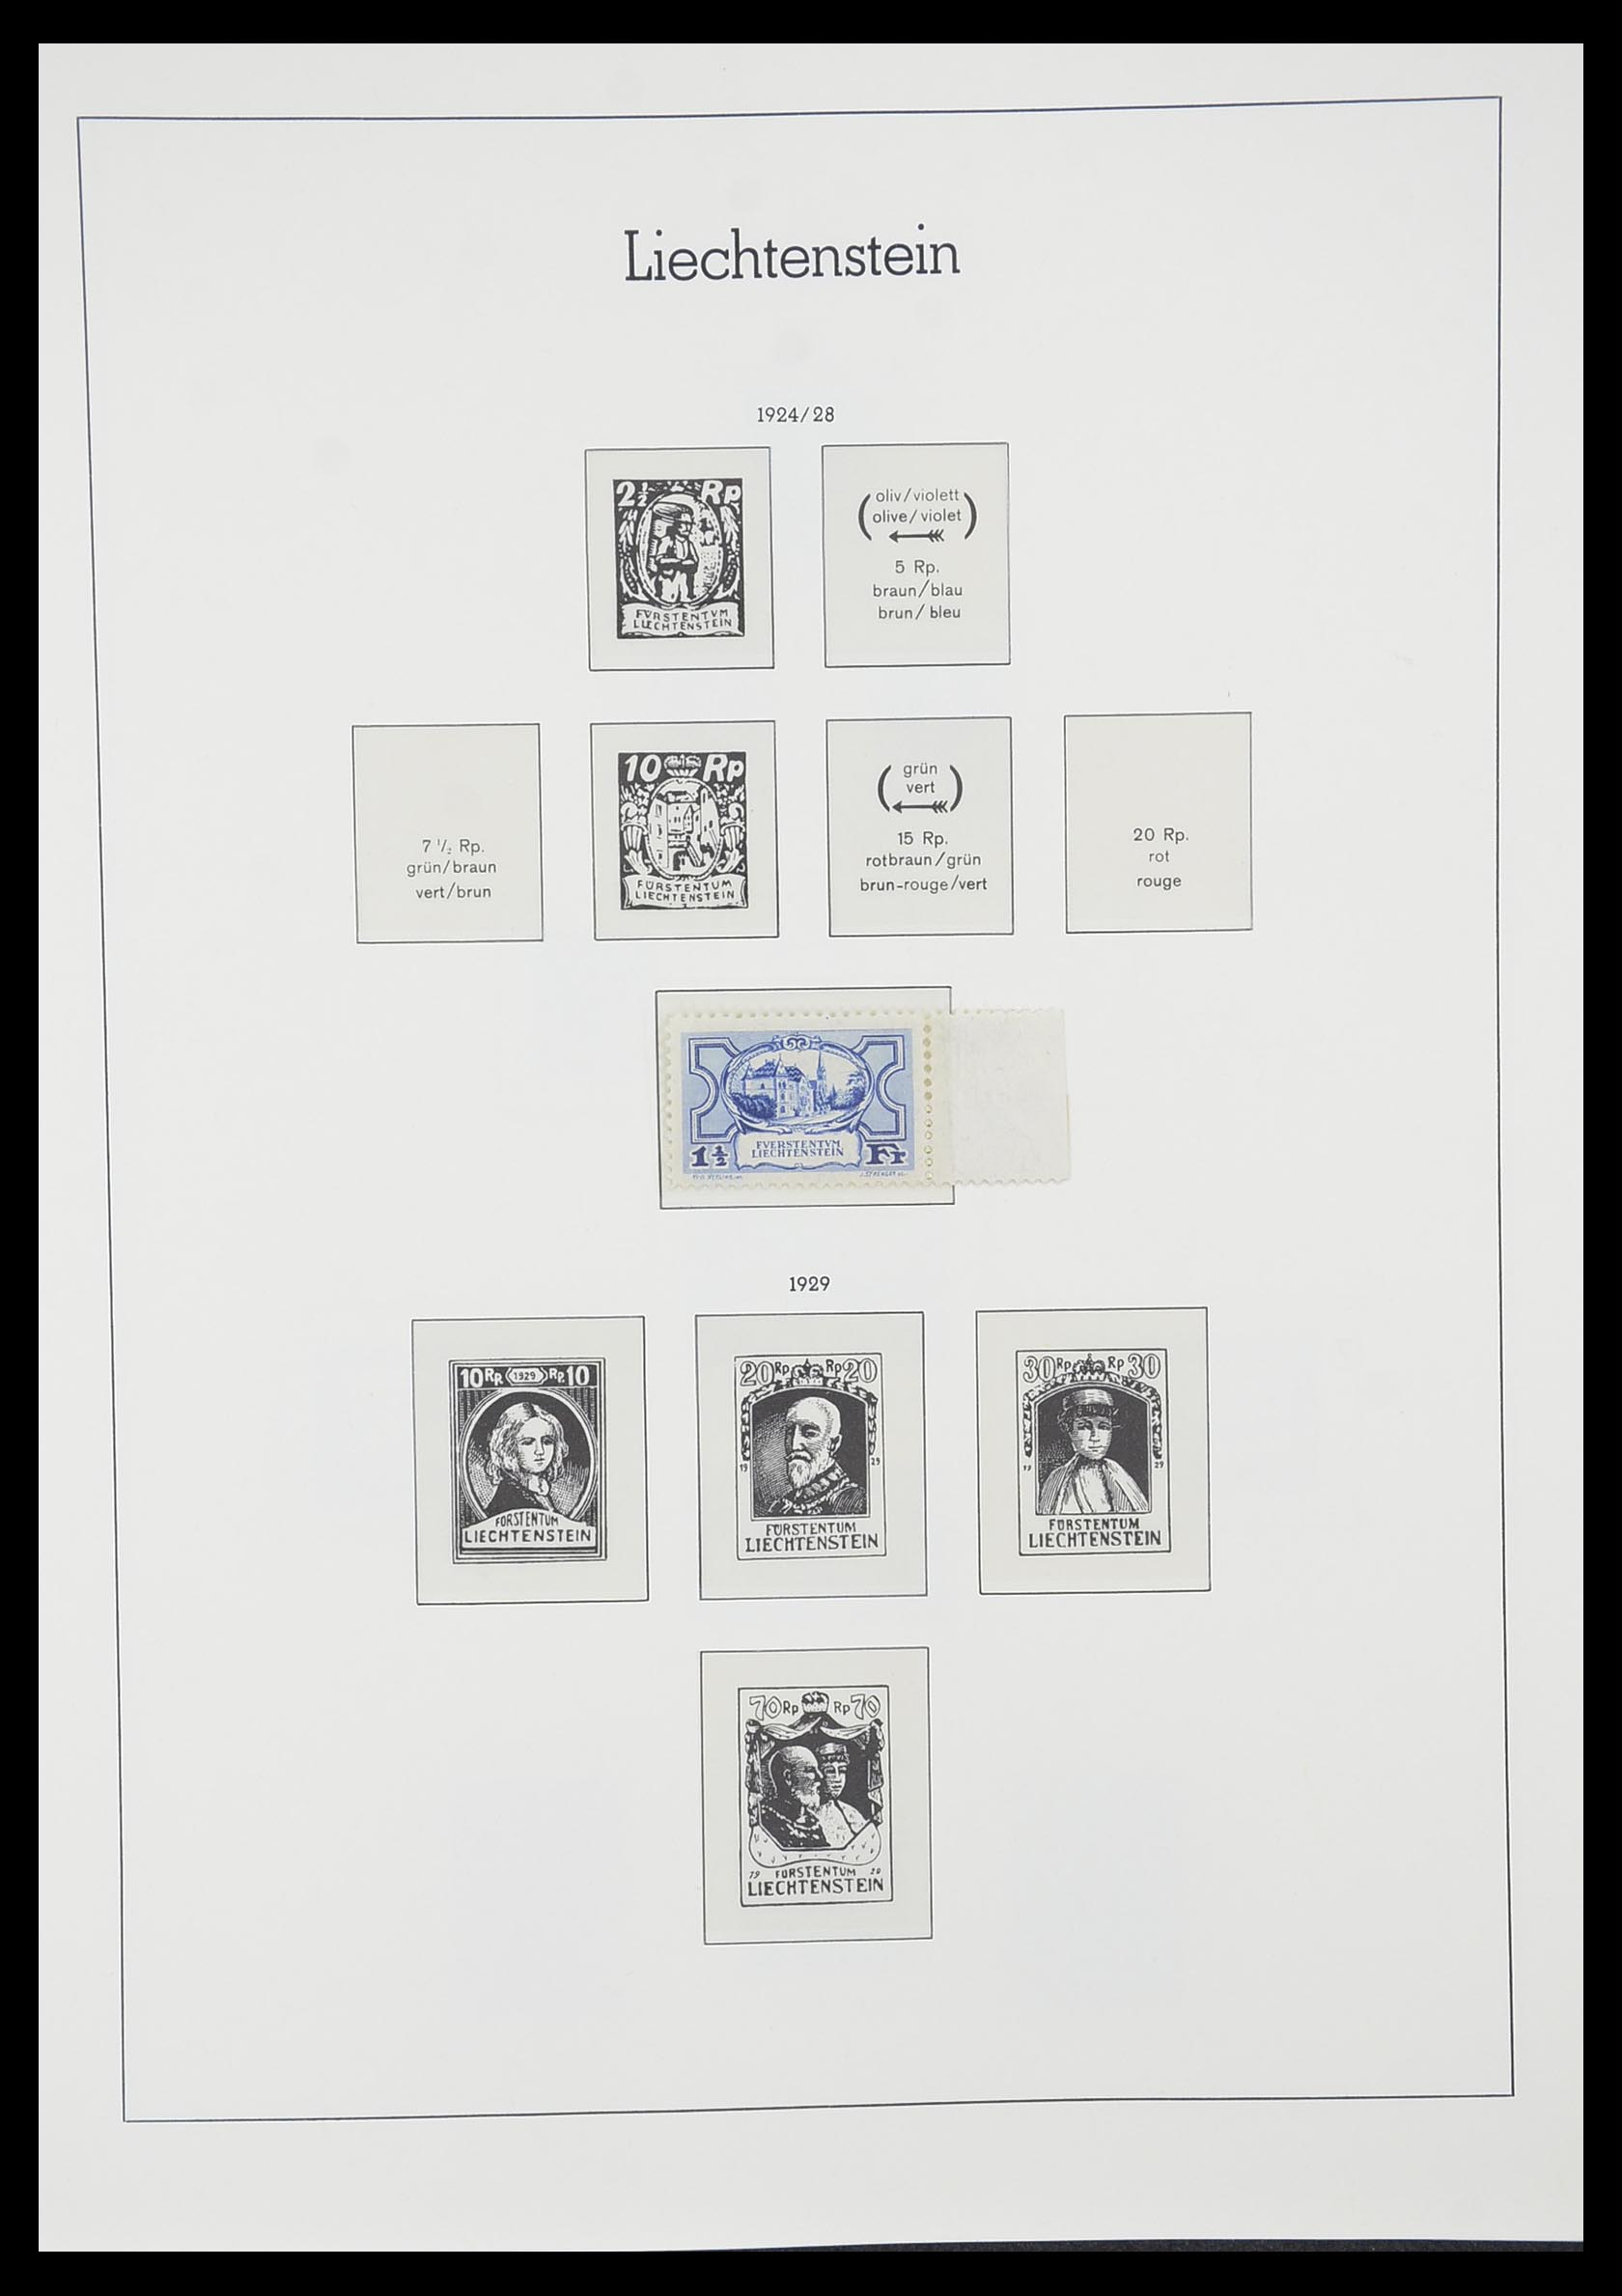 33825 008 - Stamp collection 33825 Liechtenstein 1912-1997.